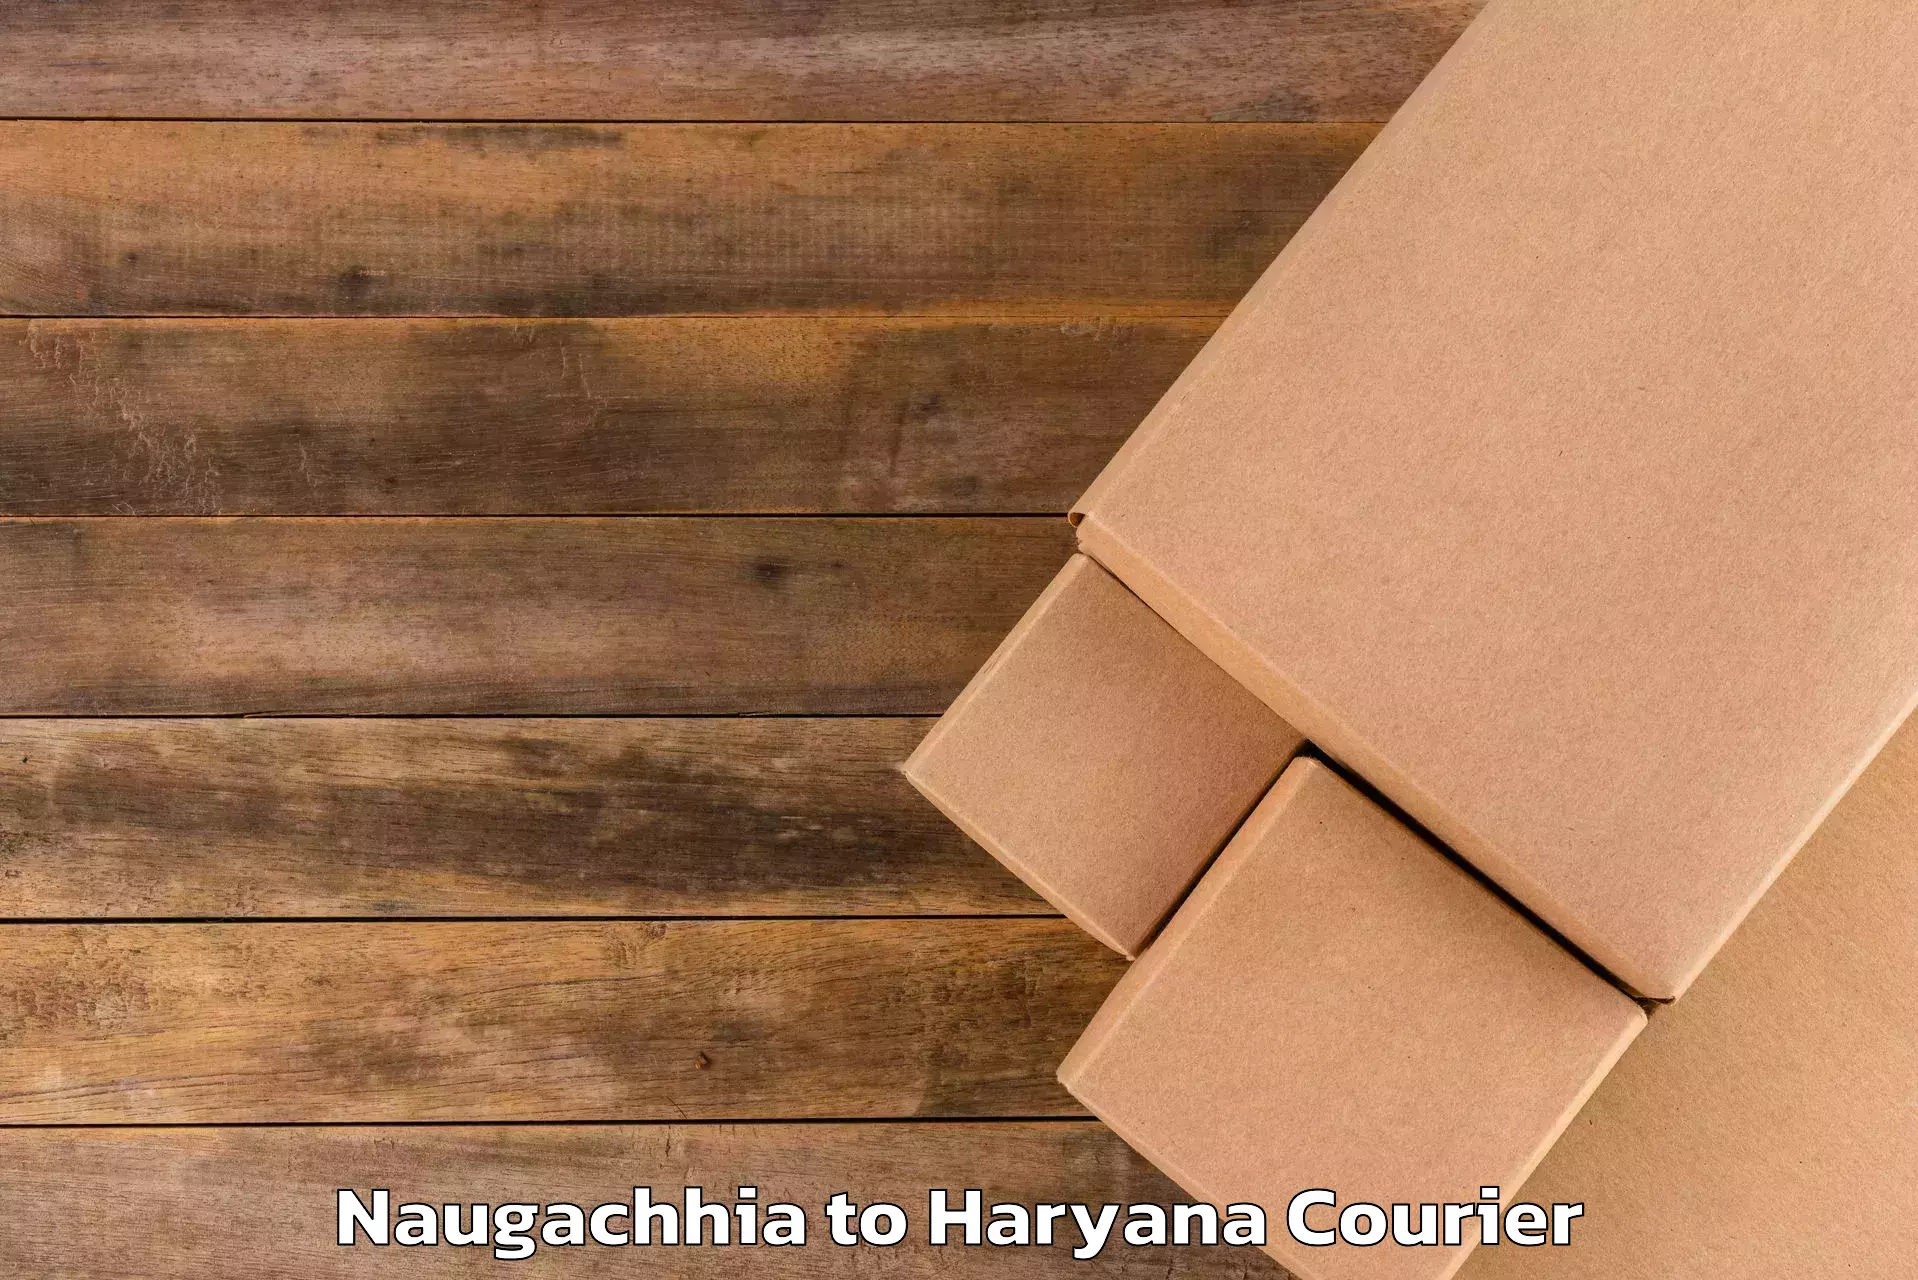 Luggage shipping service Naugachhia to NCR Haryana